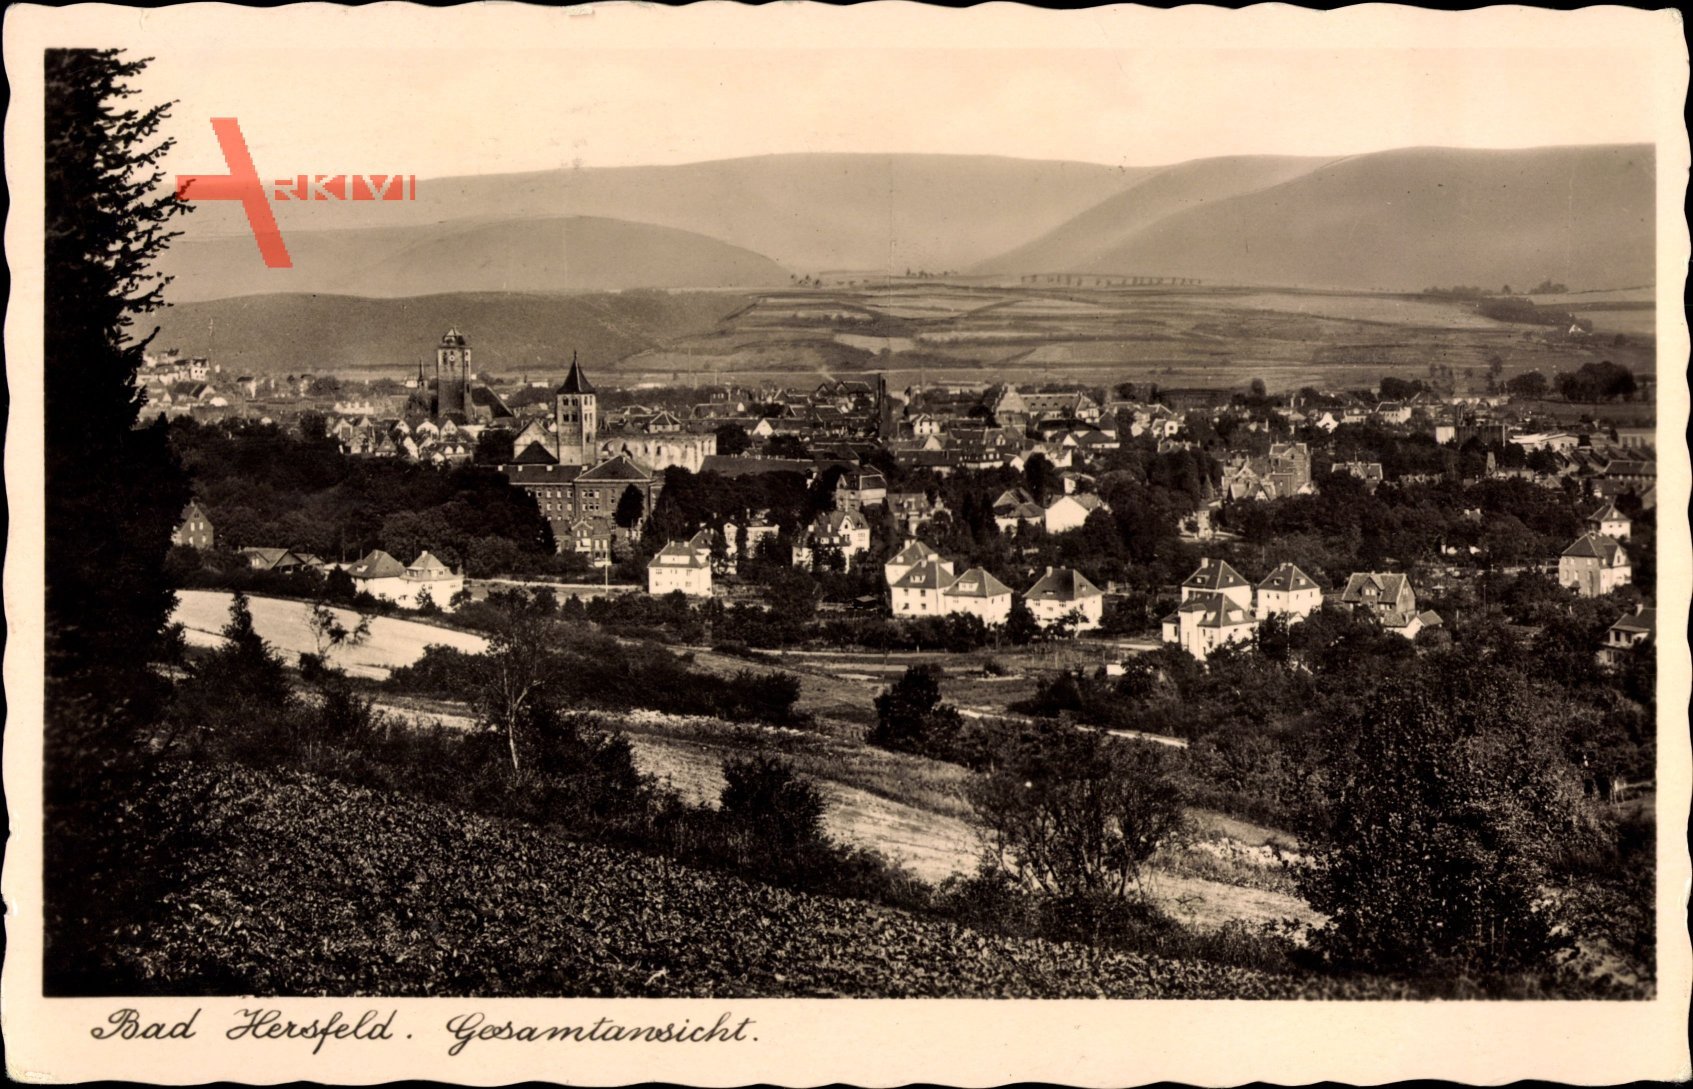 Bad Hersfeld in Hessen, Totalansicht der Ortschaft, Felder, Berge